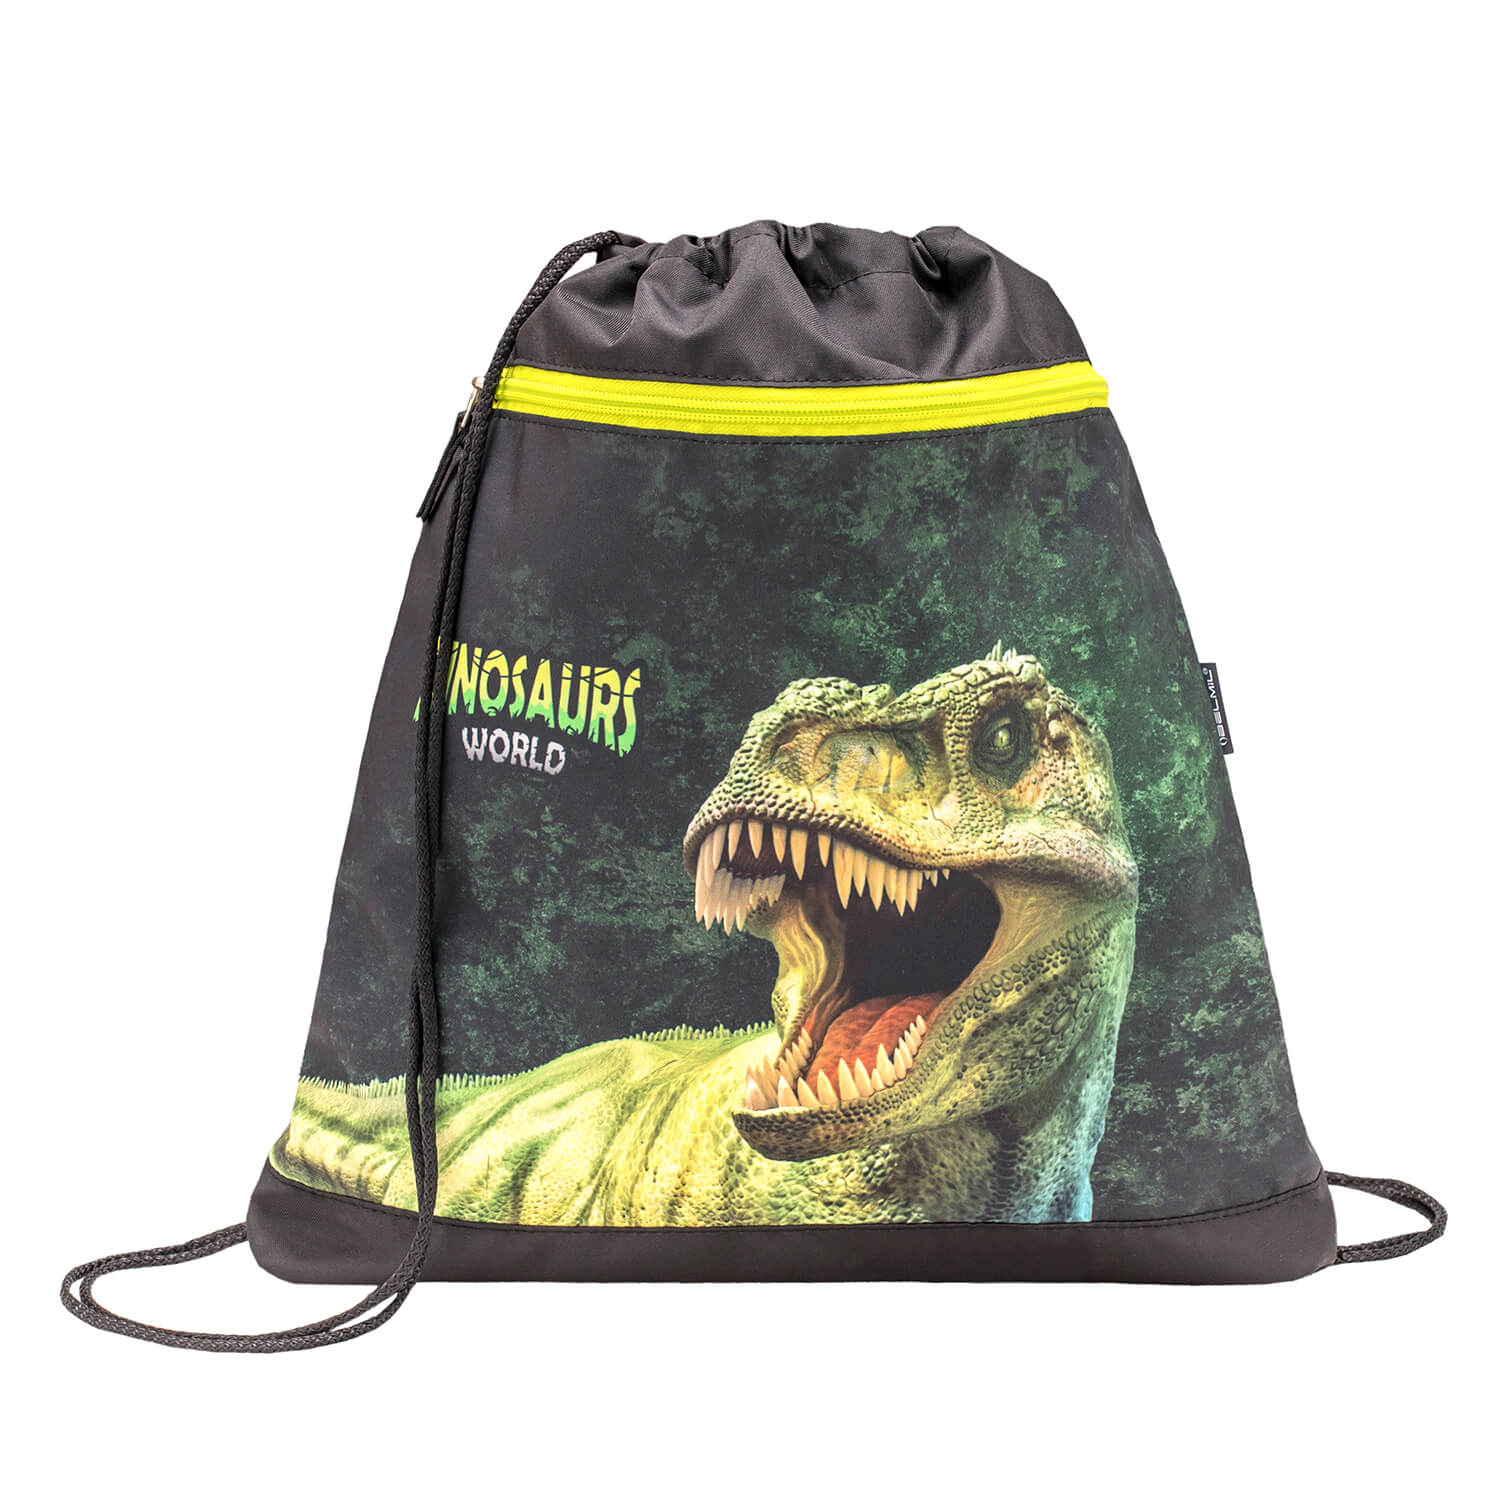 Classy Dinosaur World 2 schoolbag set 4 pcs